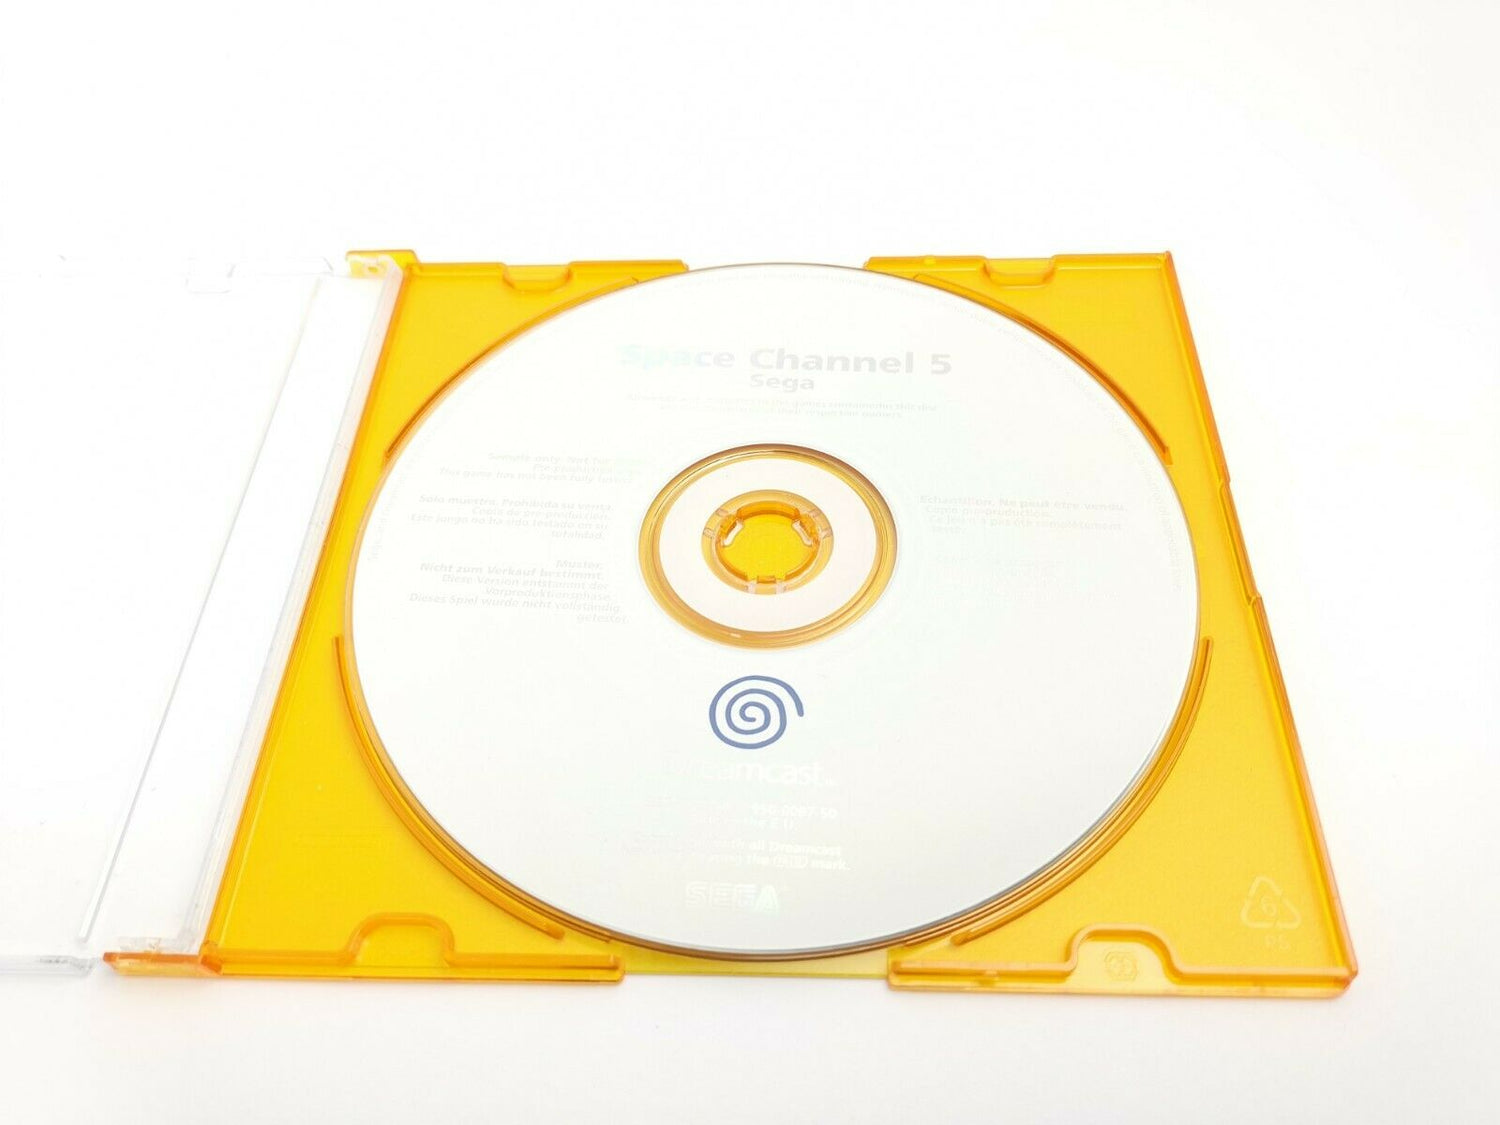 Sega Dreamcast CD 